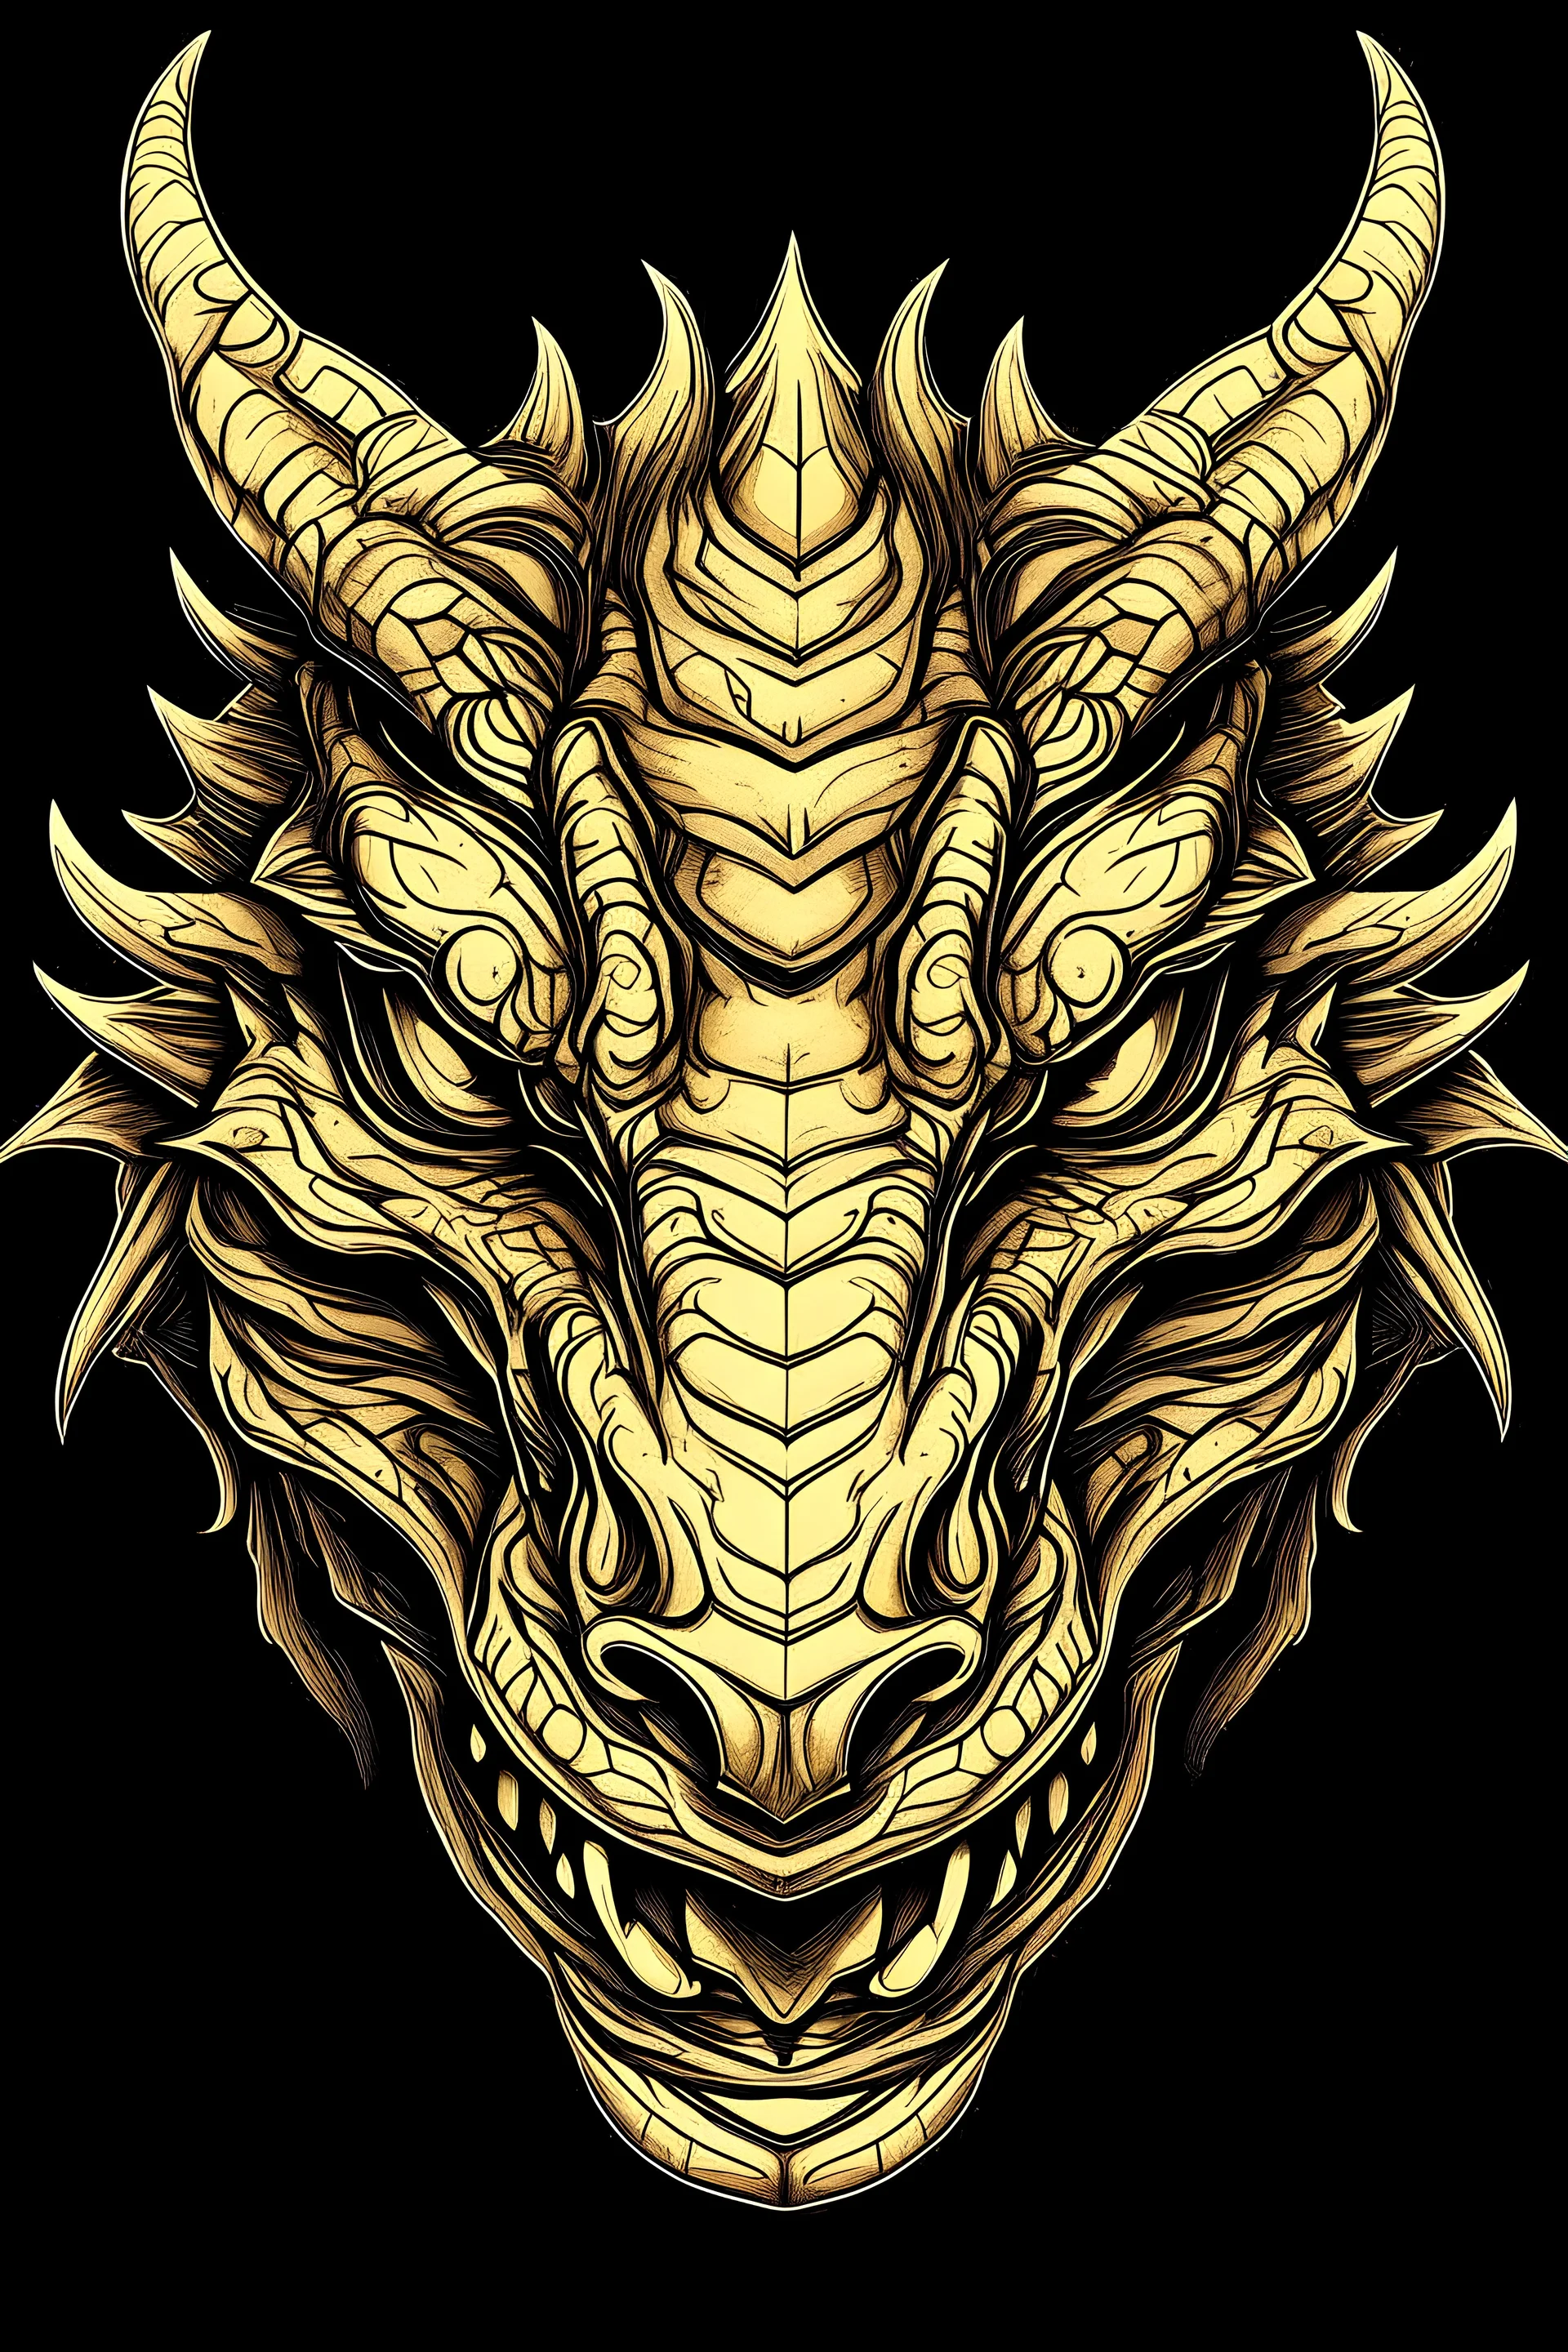 A Dragon face horizontally